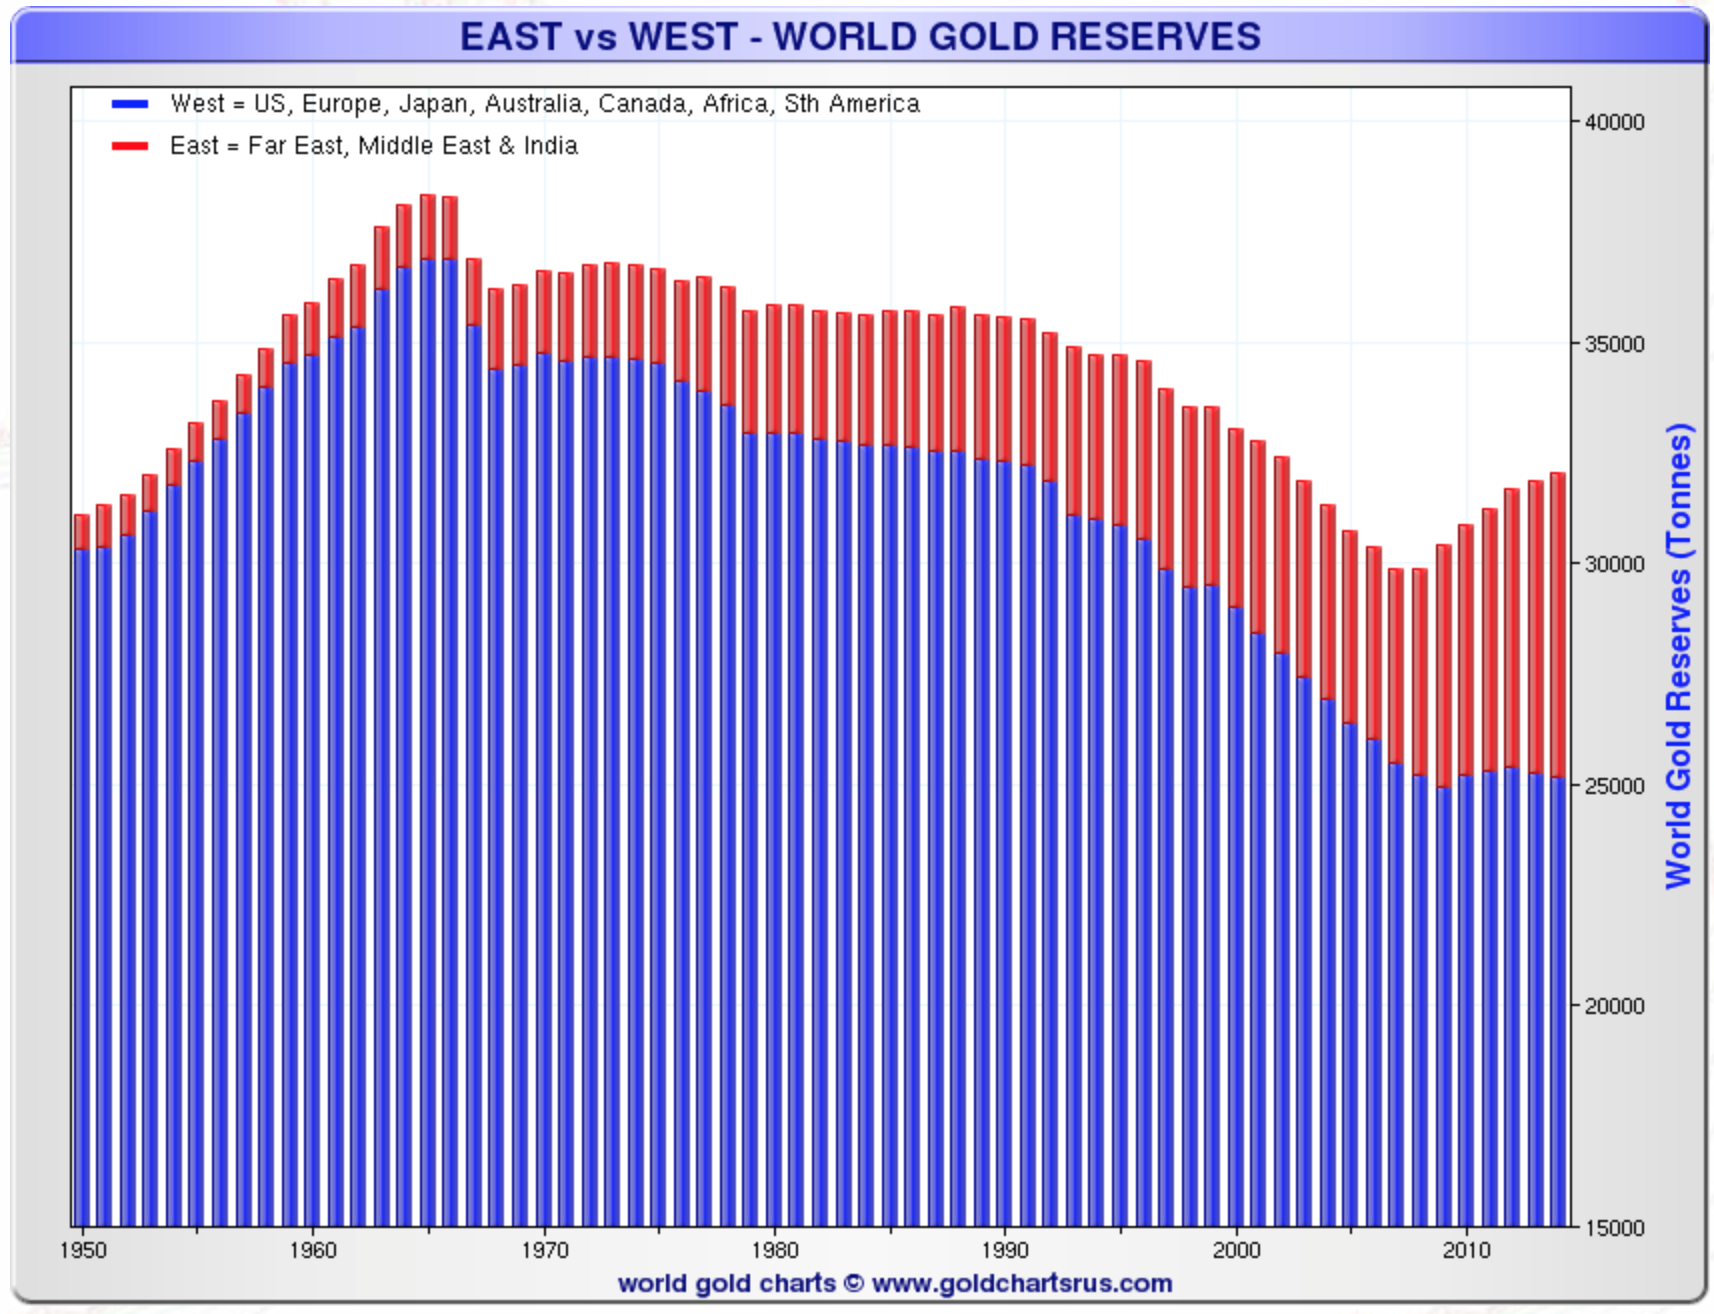 réserves d'or de l'est contre l'ouest